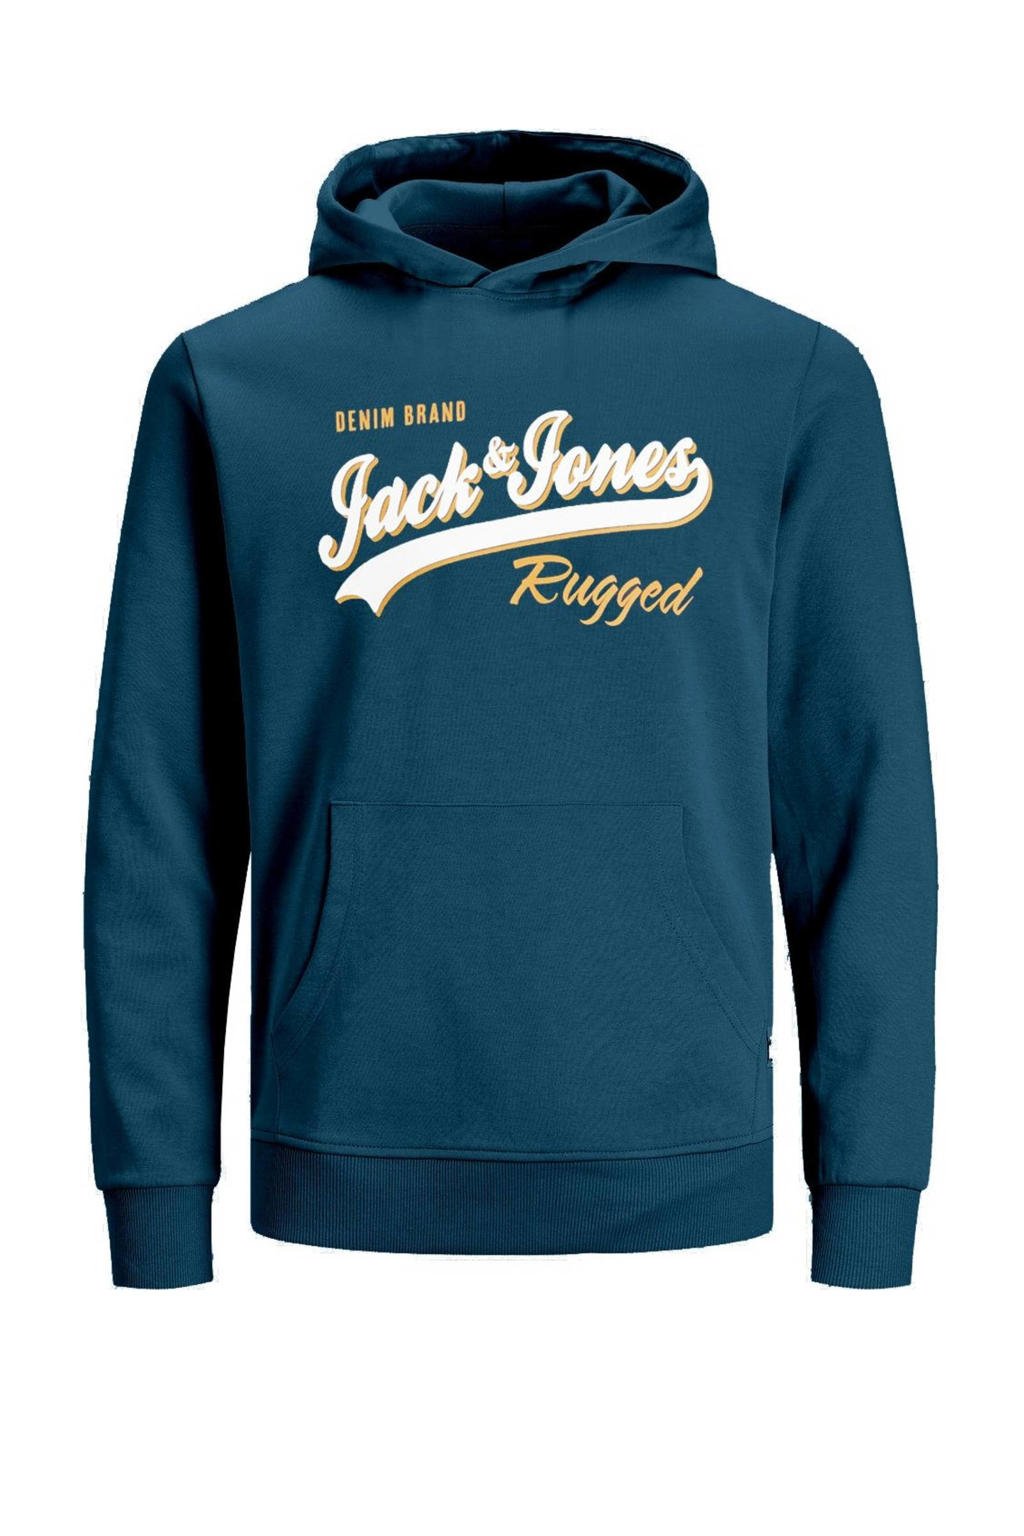 Blauwe jongens JACK & JONES JUNIOR hoodie van sweat materiaal met logo dessin, lange mouwen en capuchon